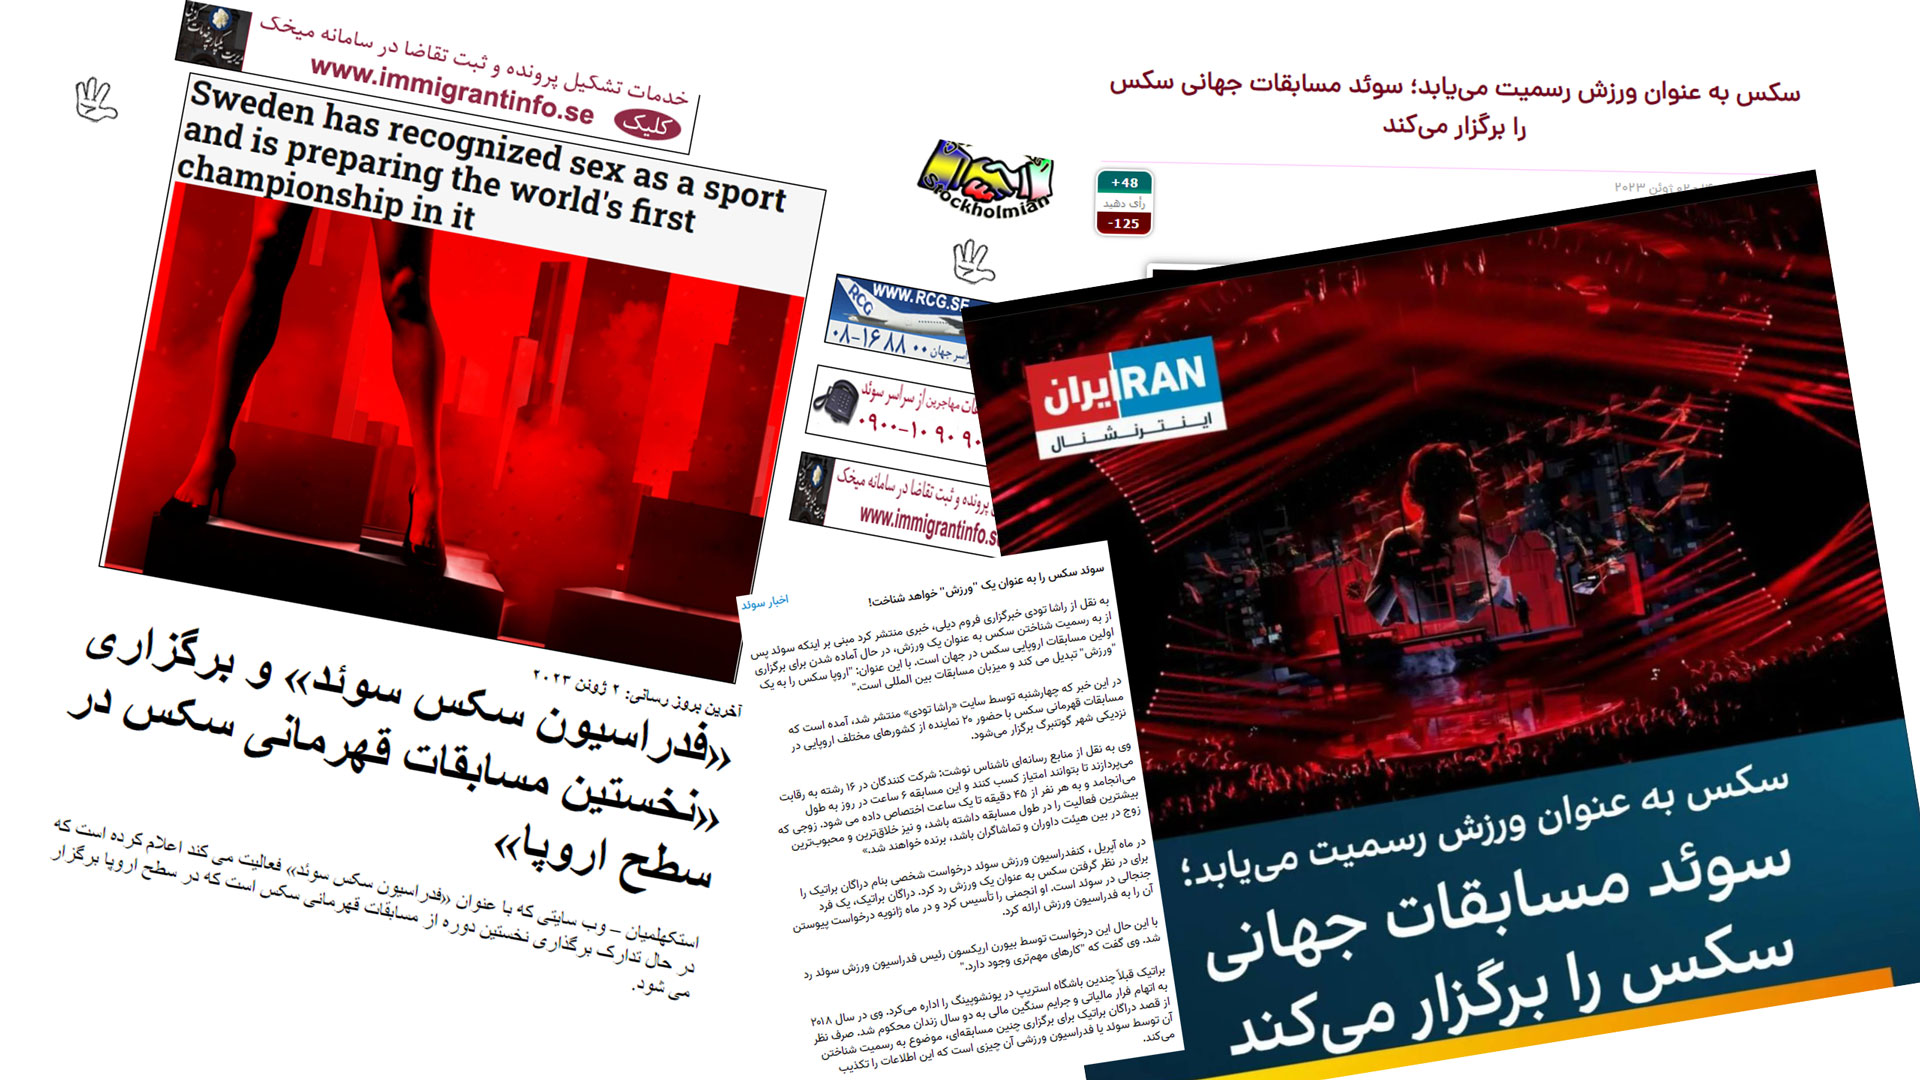 شایعه بزرگ در رسانه های ایرانی مسابقات بین المللی سکس در سوئد